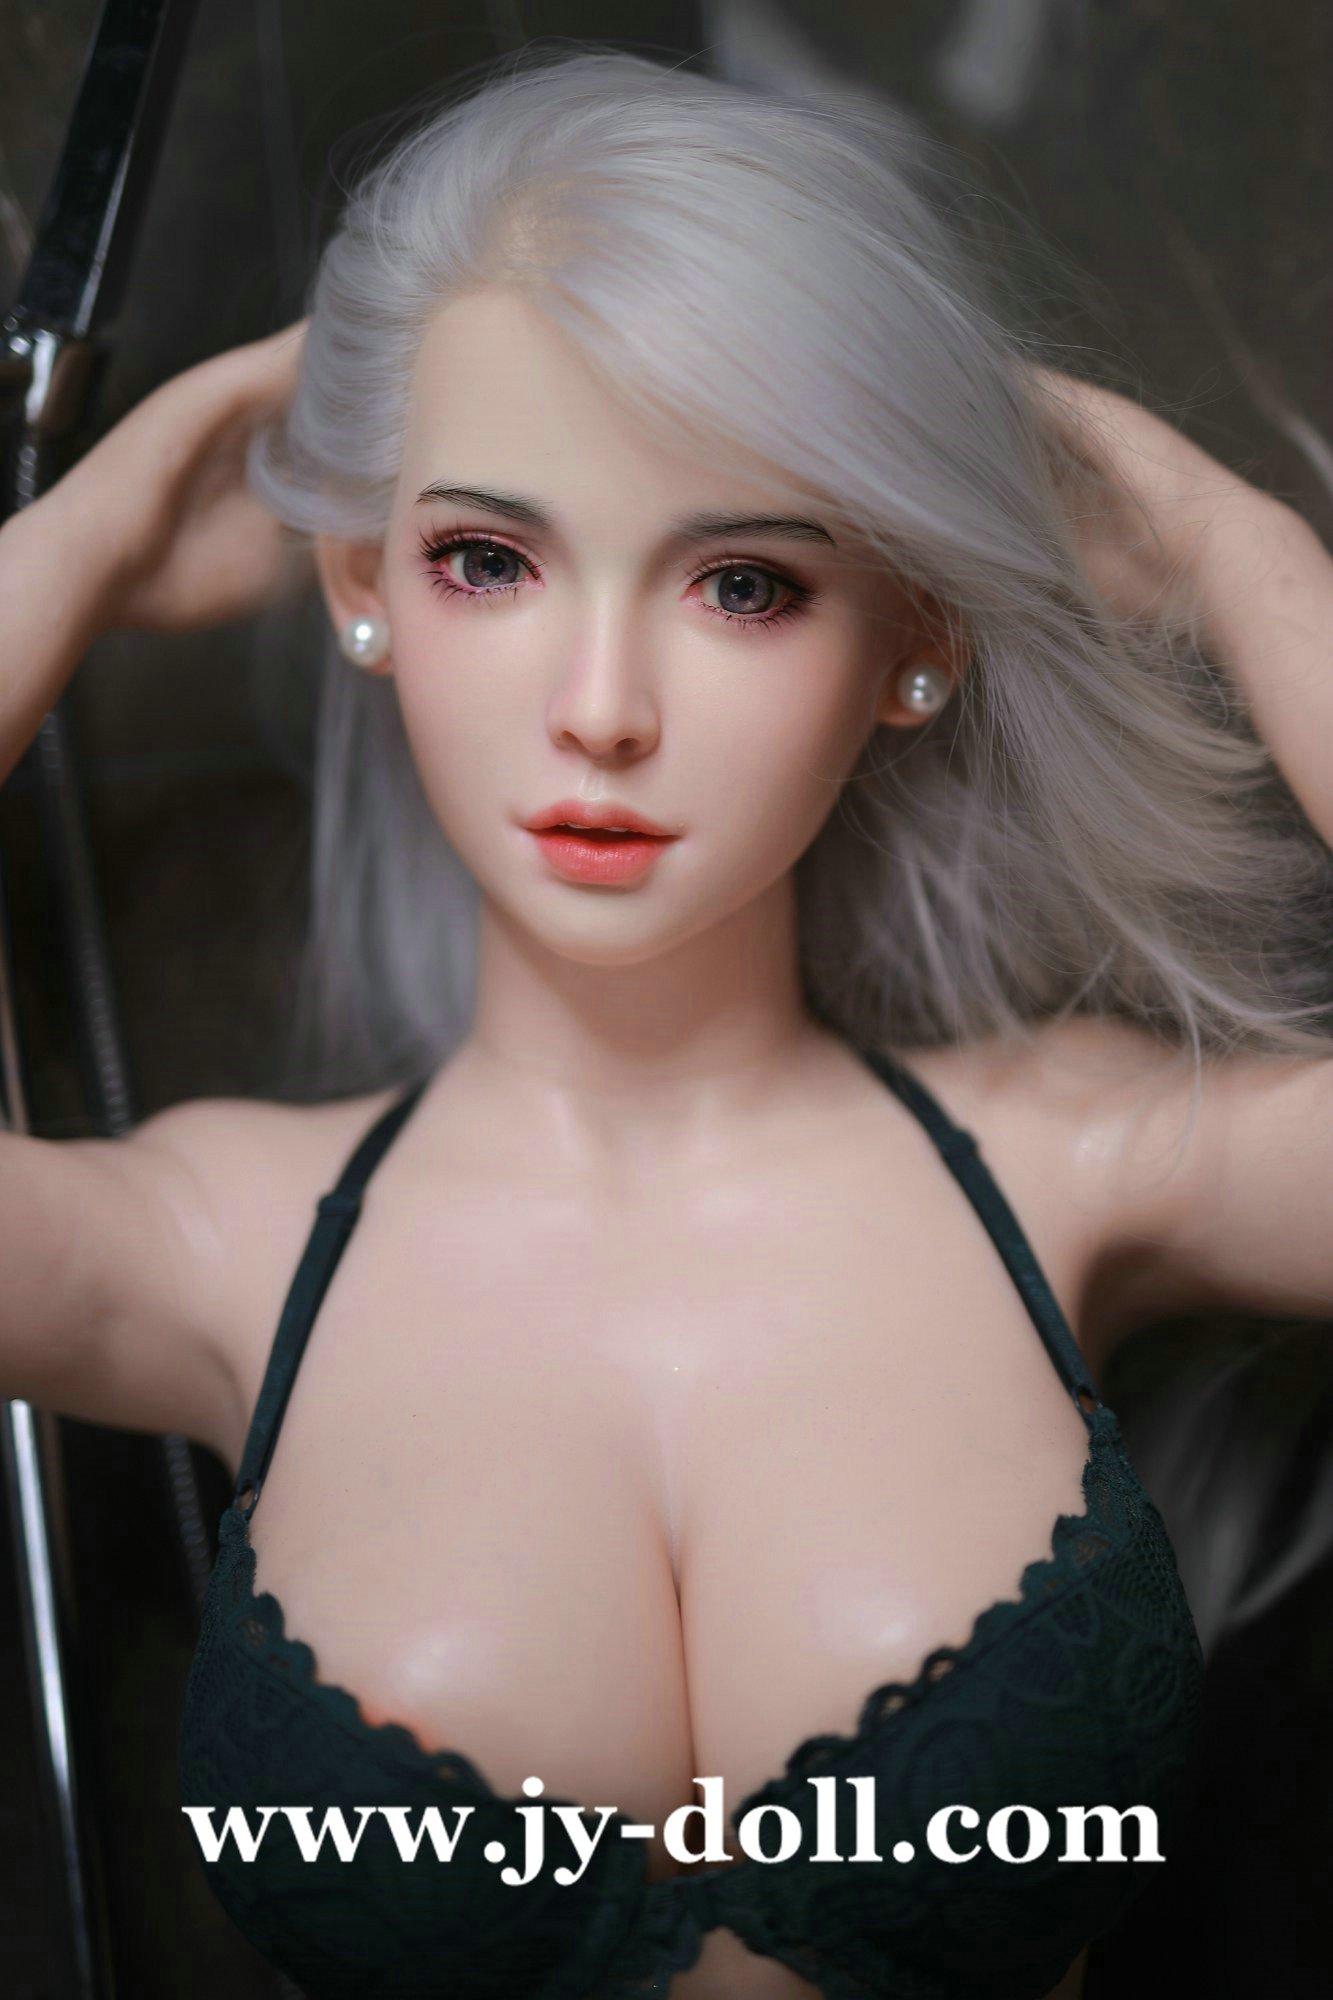 JY Doll 163cm full silicone love doll Nancy